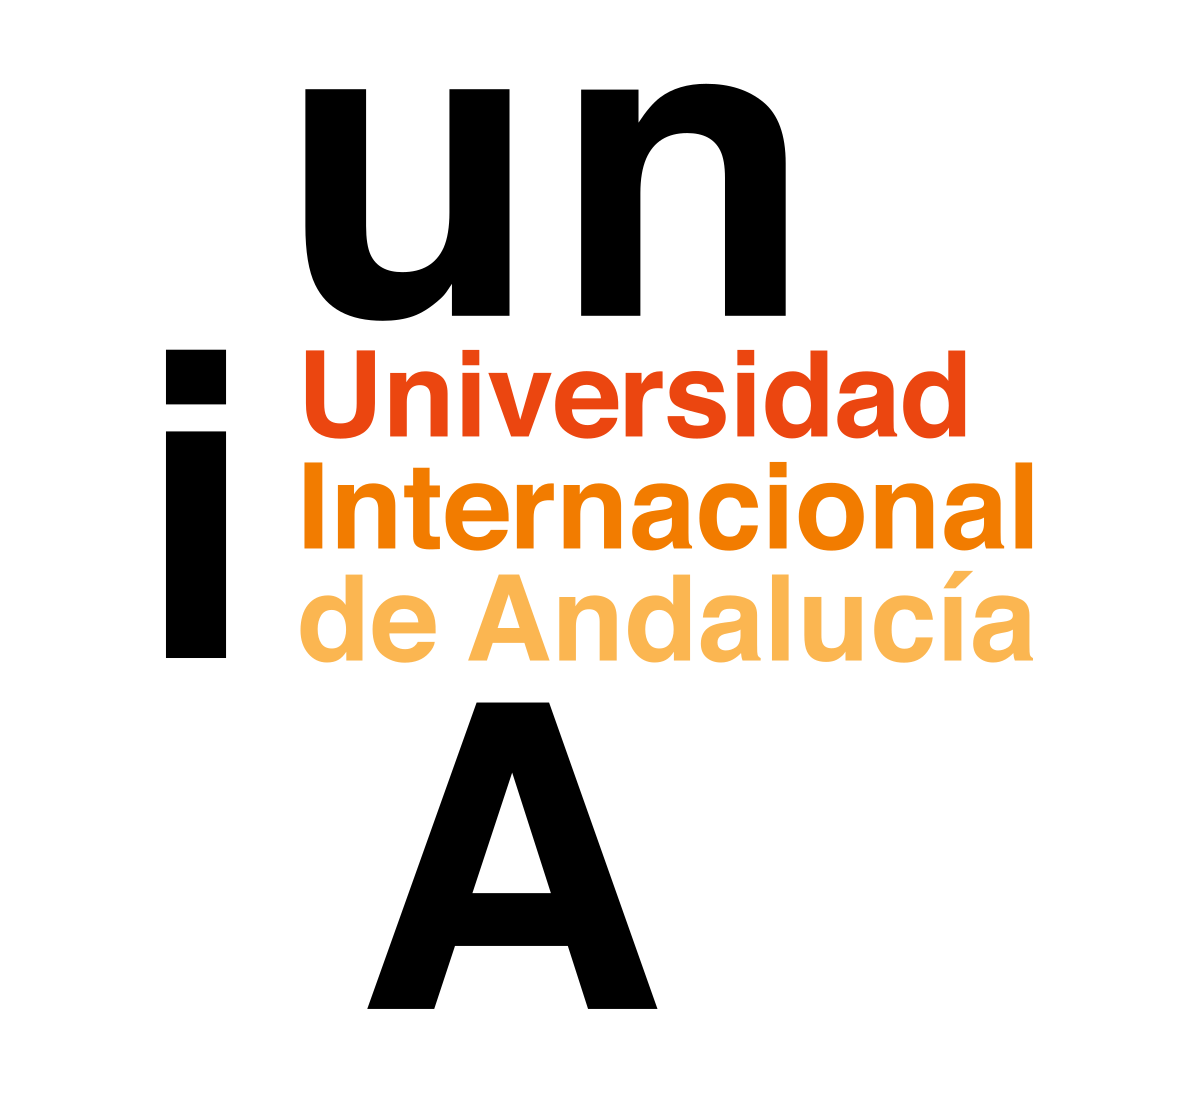 Junta de Andalucia Logo Vecto